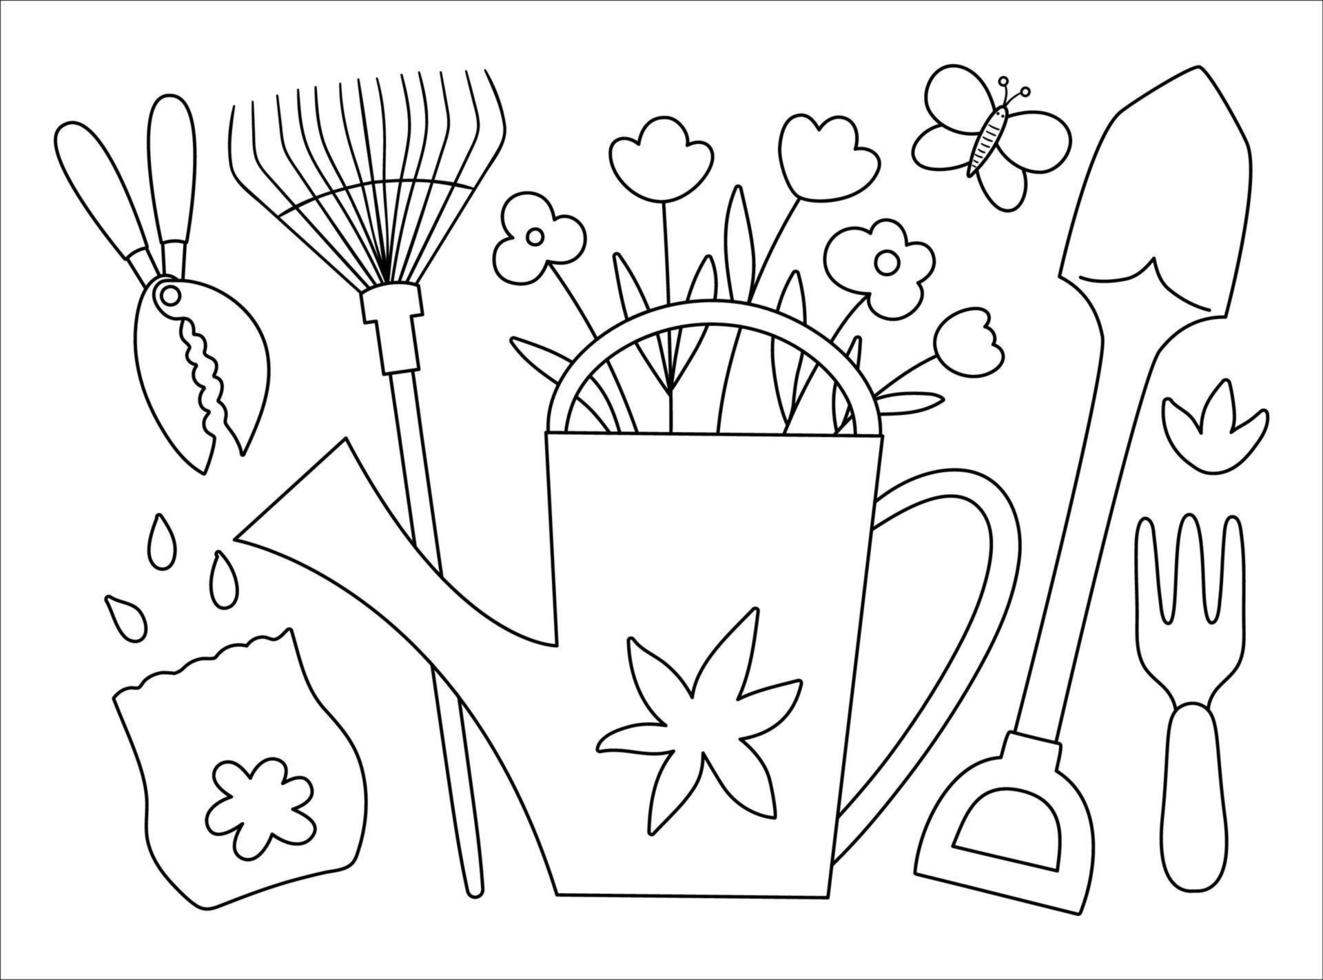 vector zwart-wit afbeelding van kleurrijke tuingereedschap met bloemen en planten. overzicht lente foto. lijn gieter met bloemen, harken, zaden, vlinder. tuinieren thema concept.